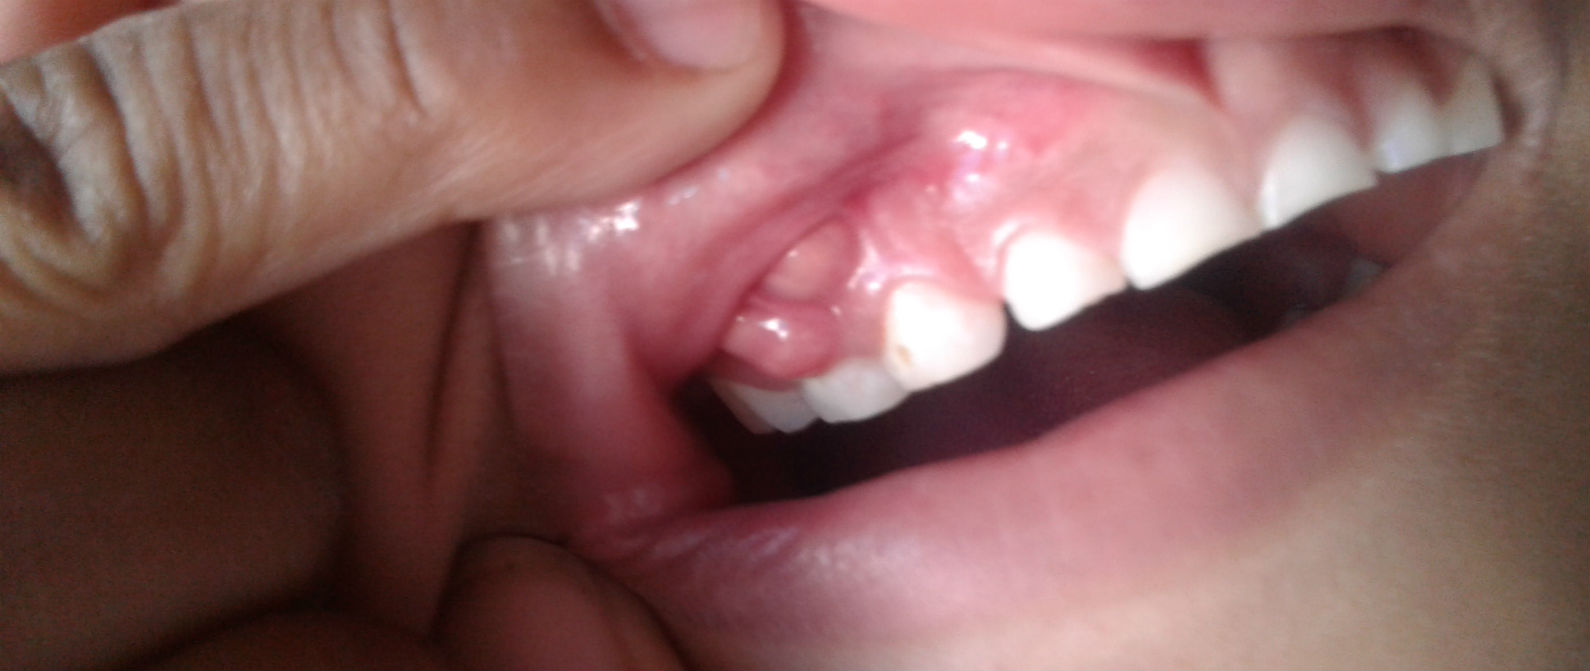 Identifica un absceso dental